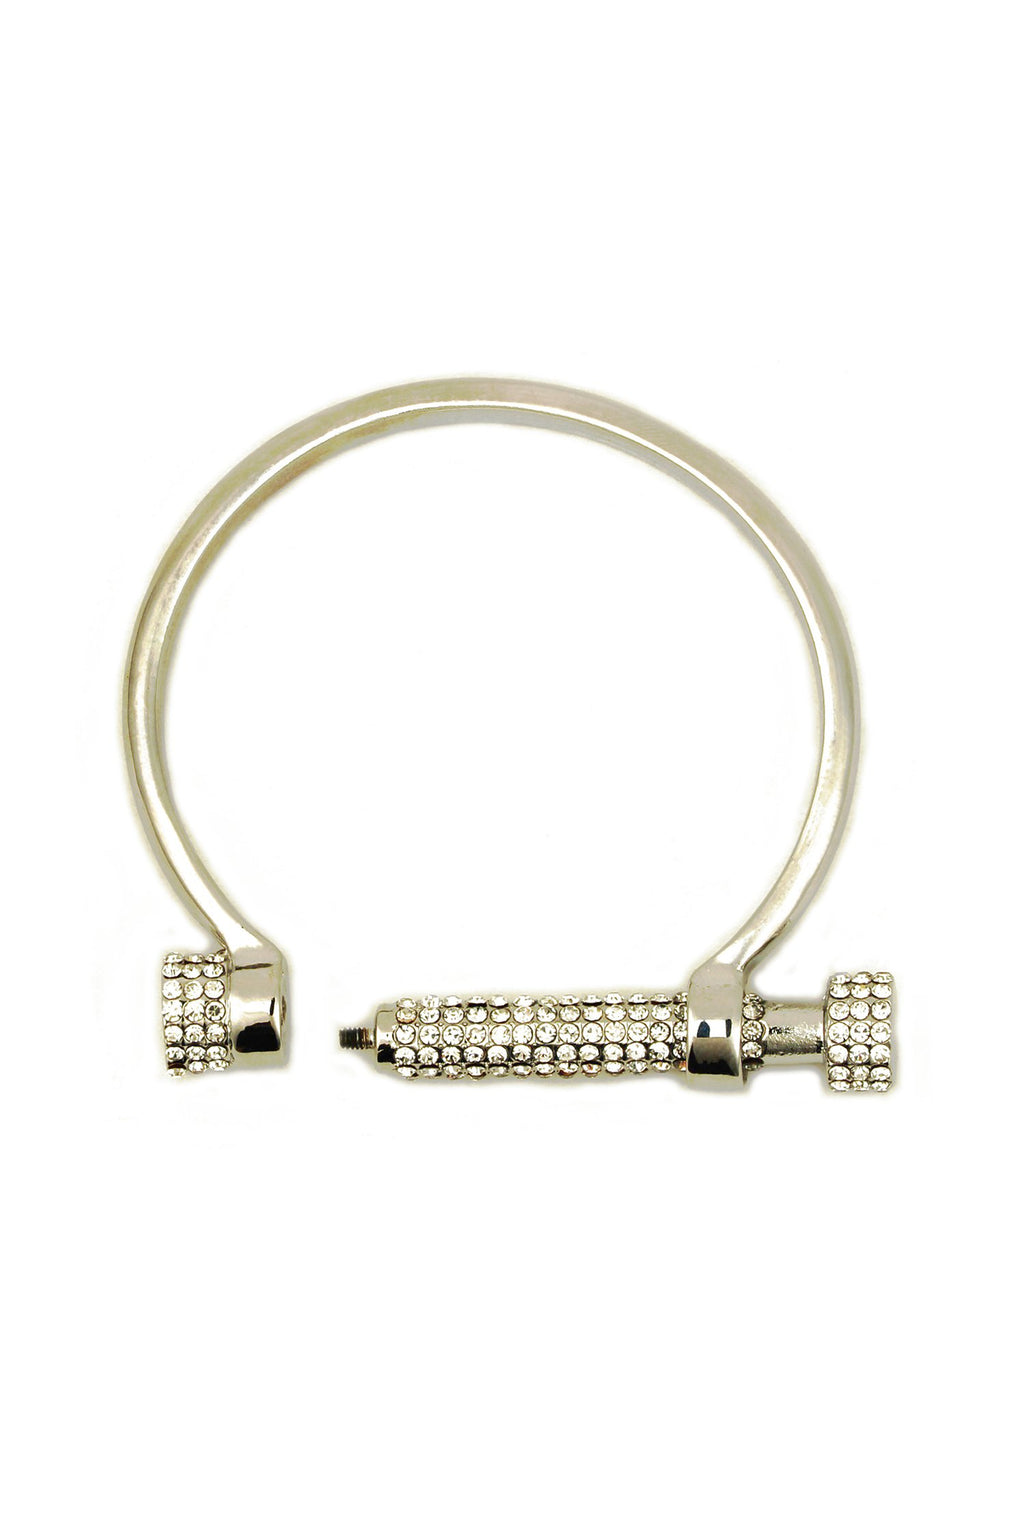 silver tone cuff screw bracelet